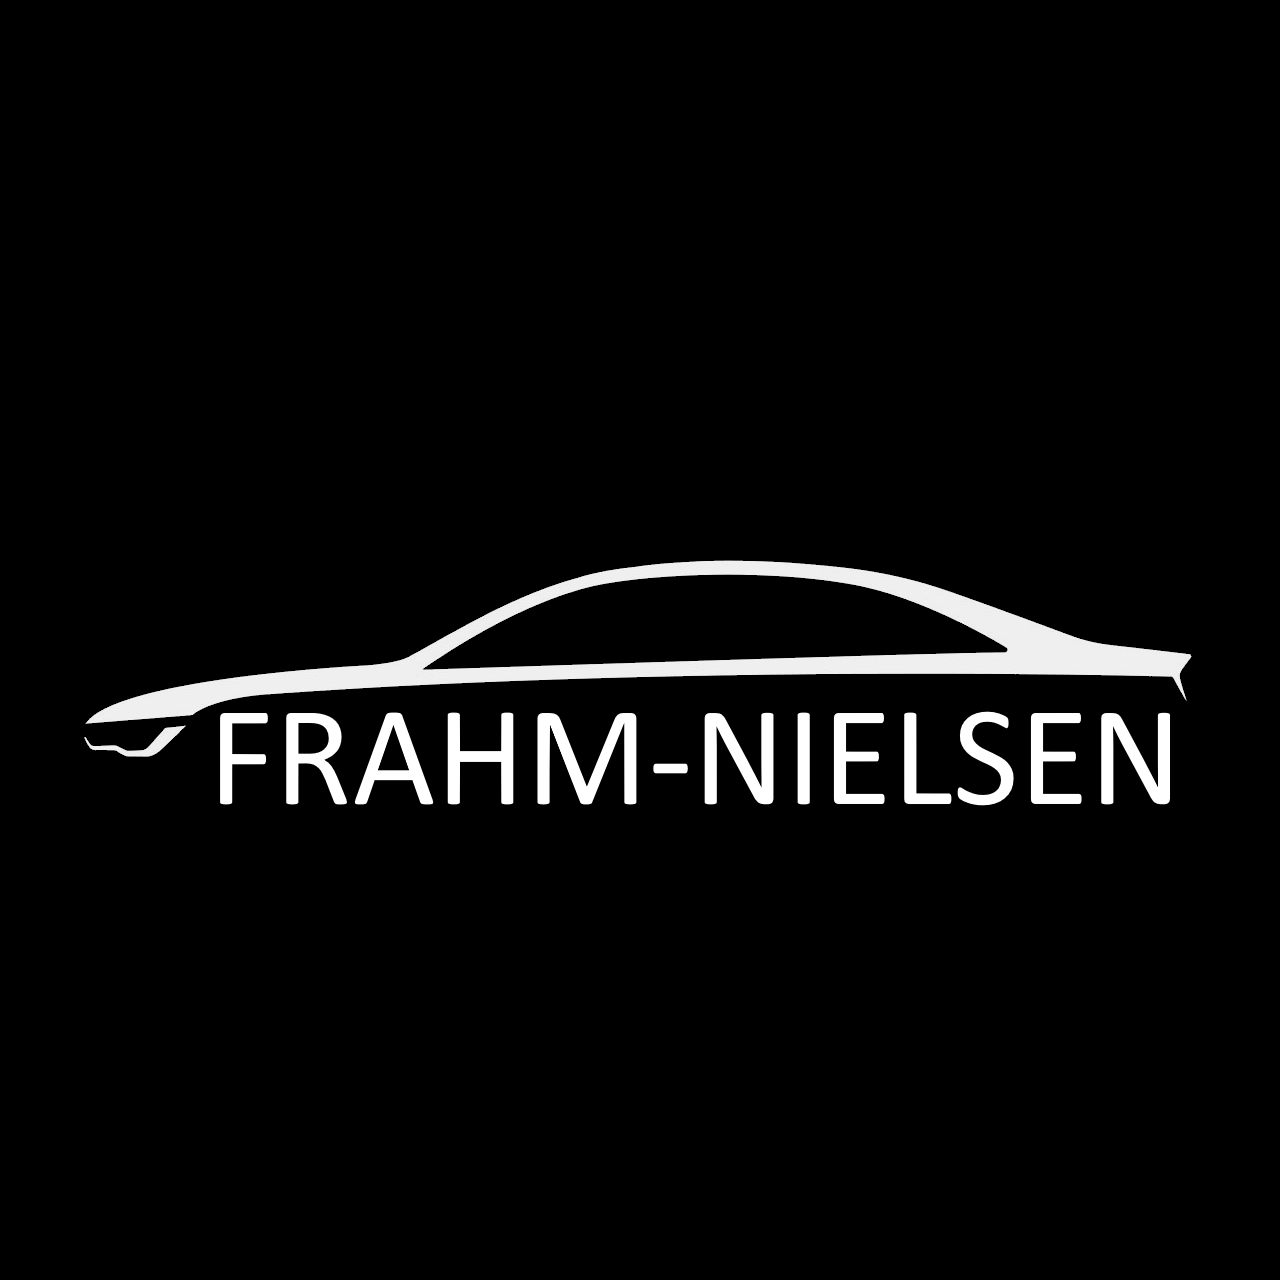 Biler fra Frahm-Nielsen